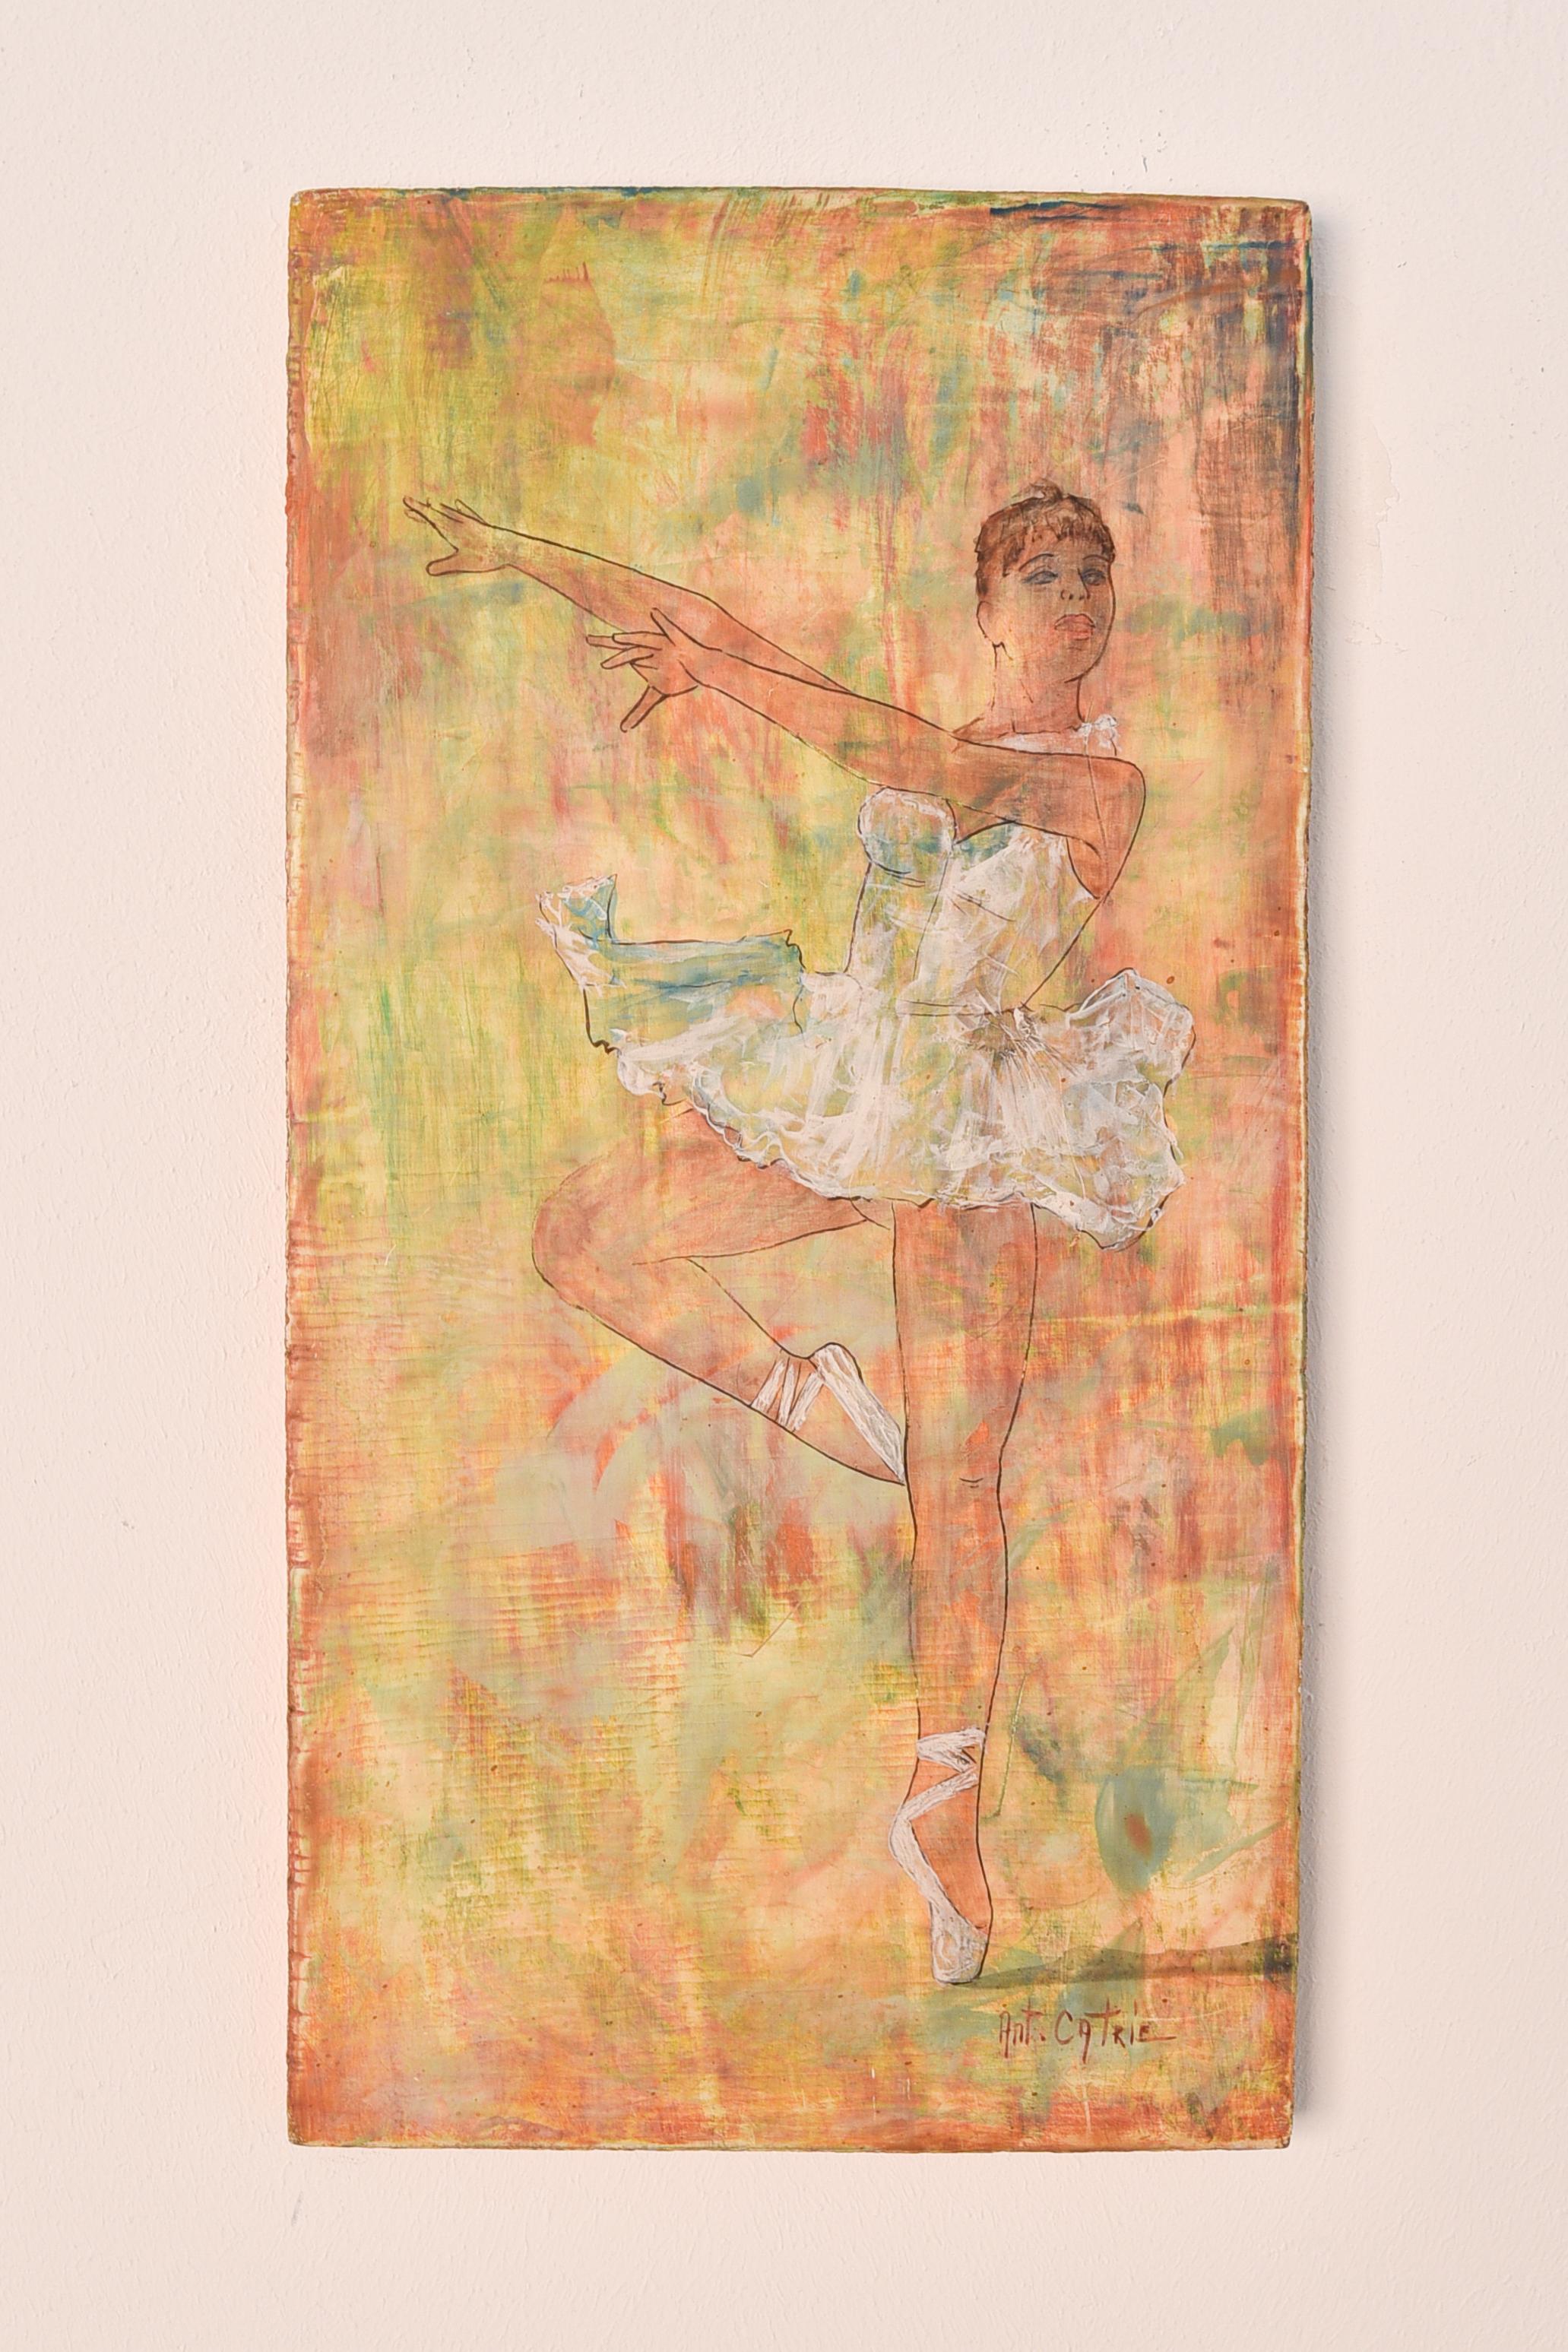 Ballerina Tänzerin auf vivid gelb und orange Hintergrund  – Painting von Antoon Catrie